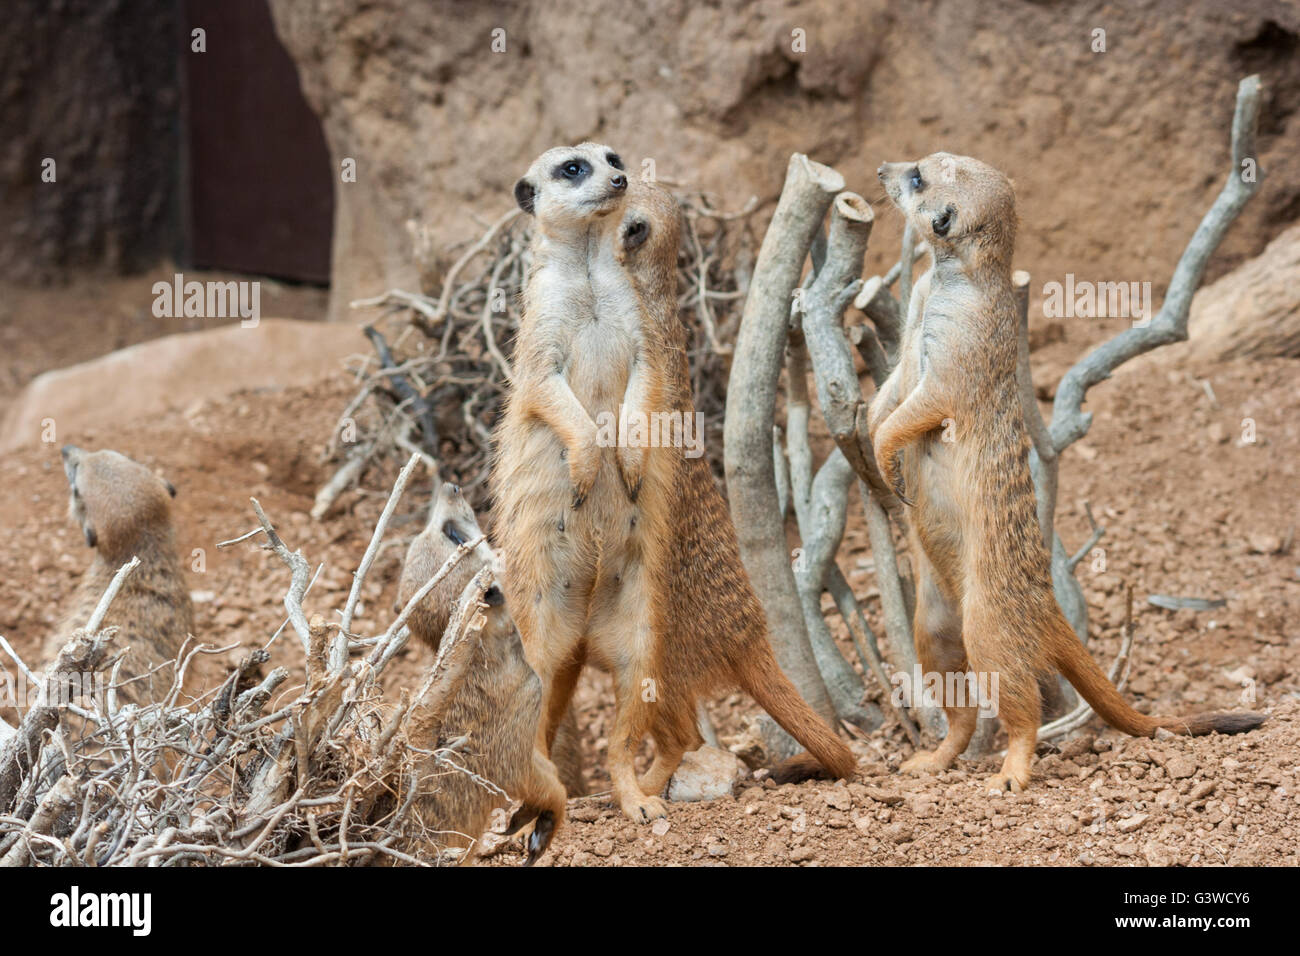 Family of Meerkats standing alert in the desert environment Stock Photo